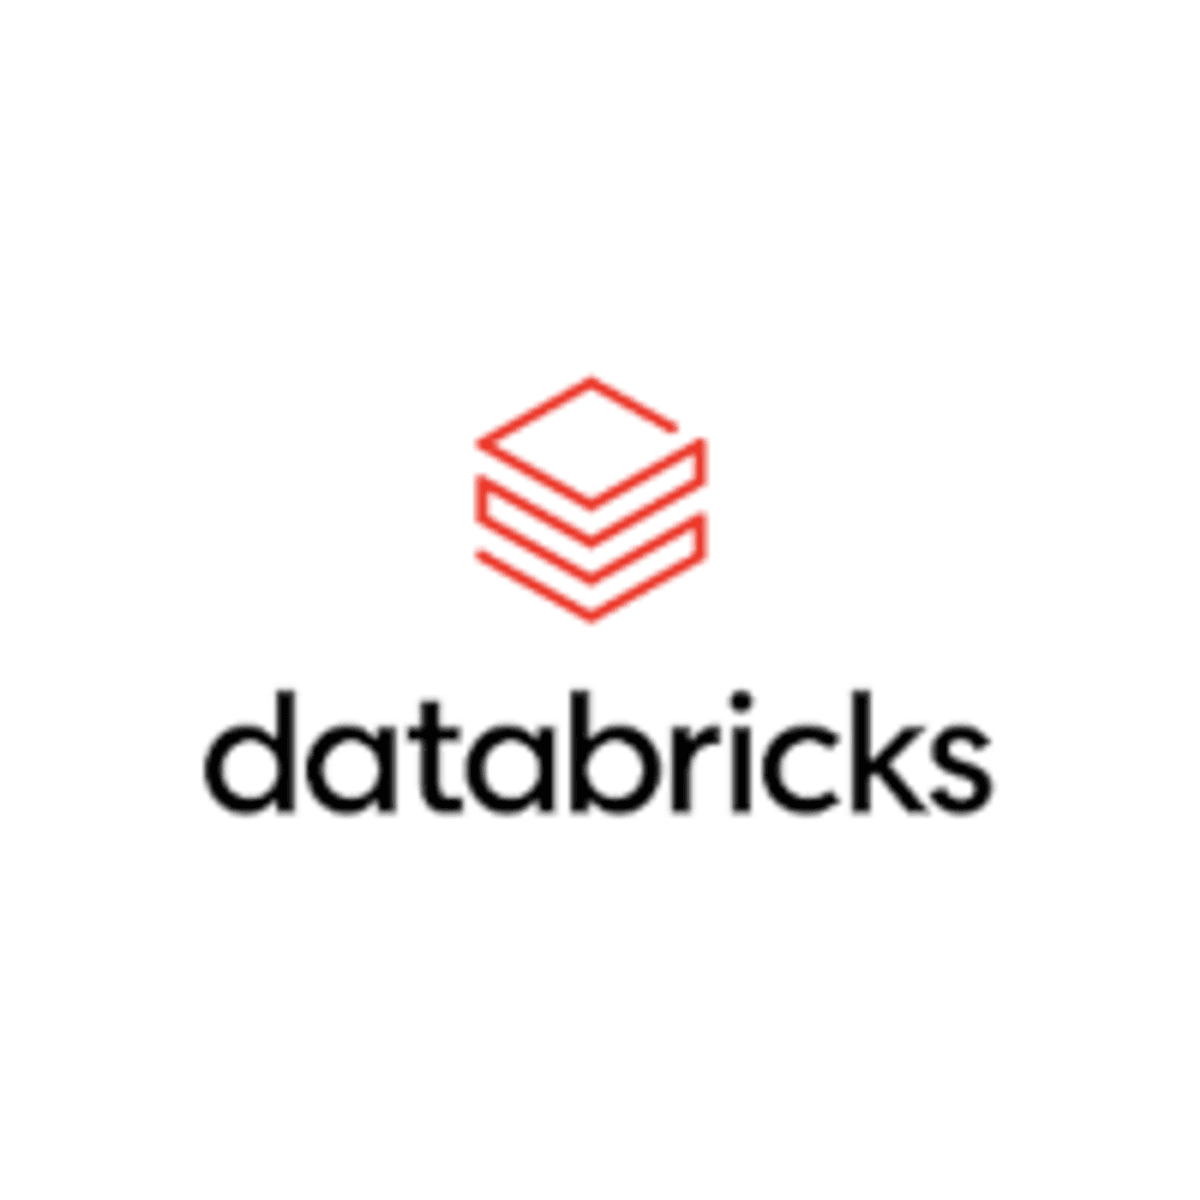 Databricks lanceert Delta Sharing protocol voor veilige datadeling image